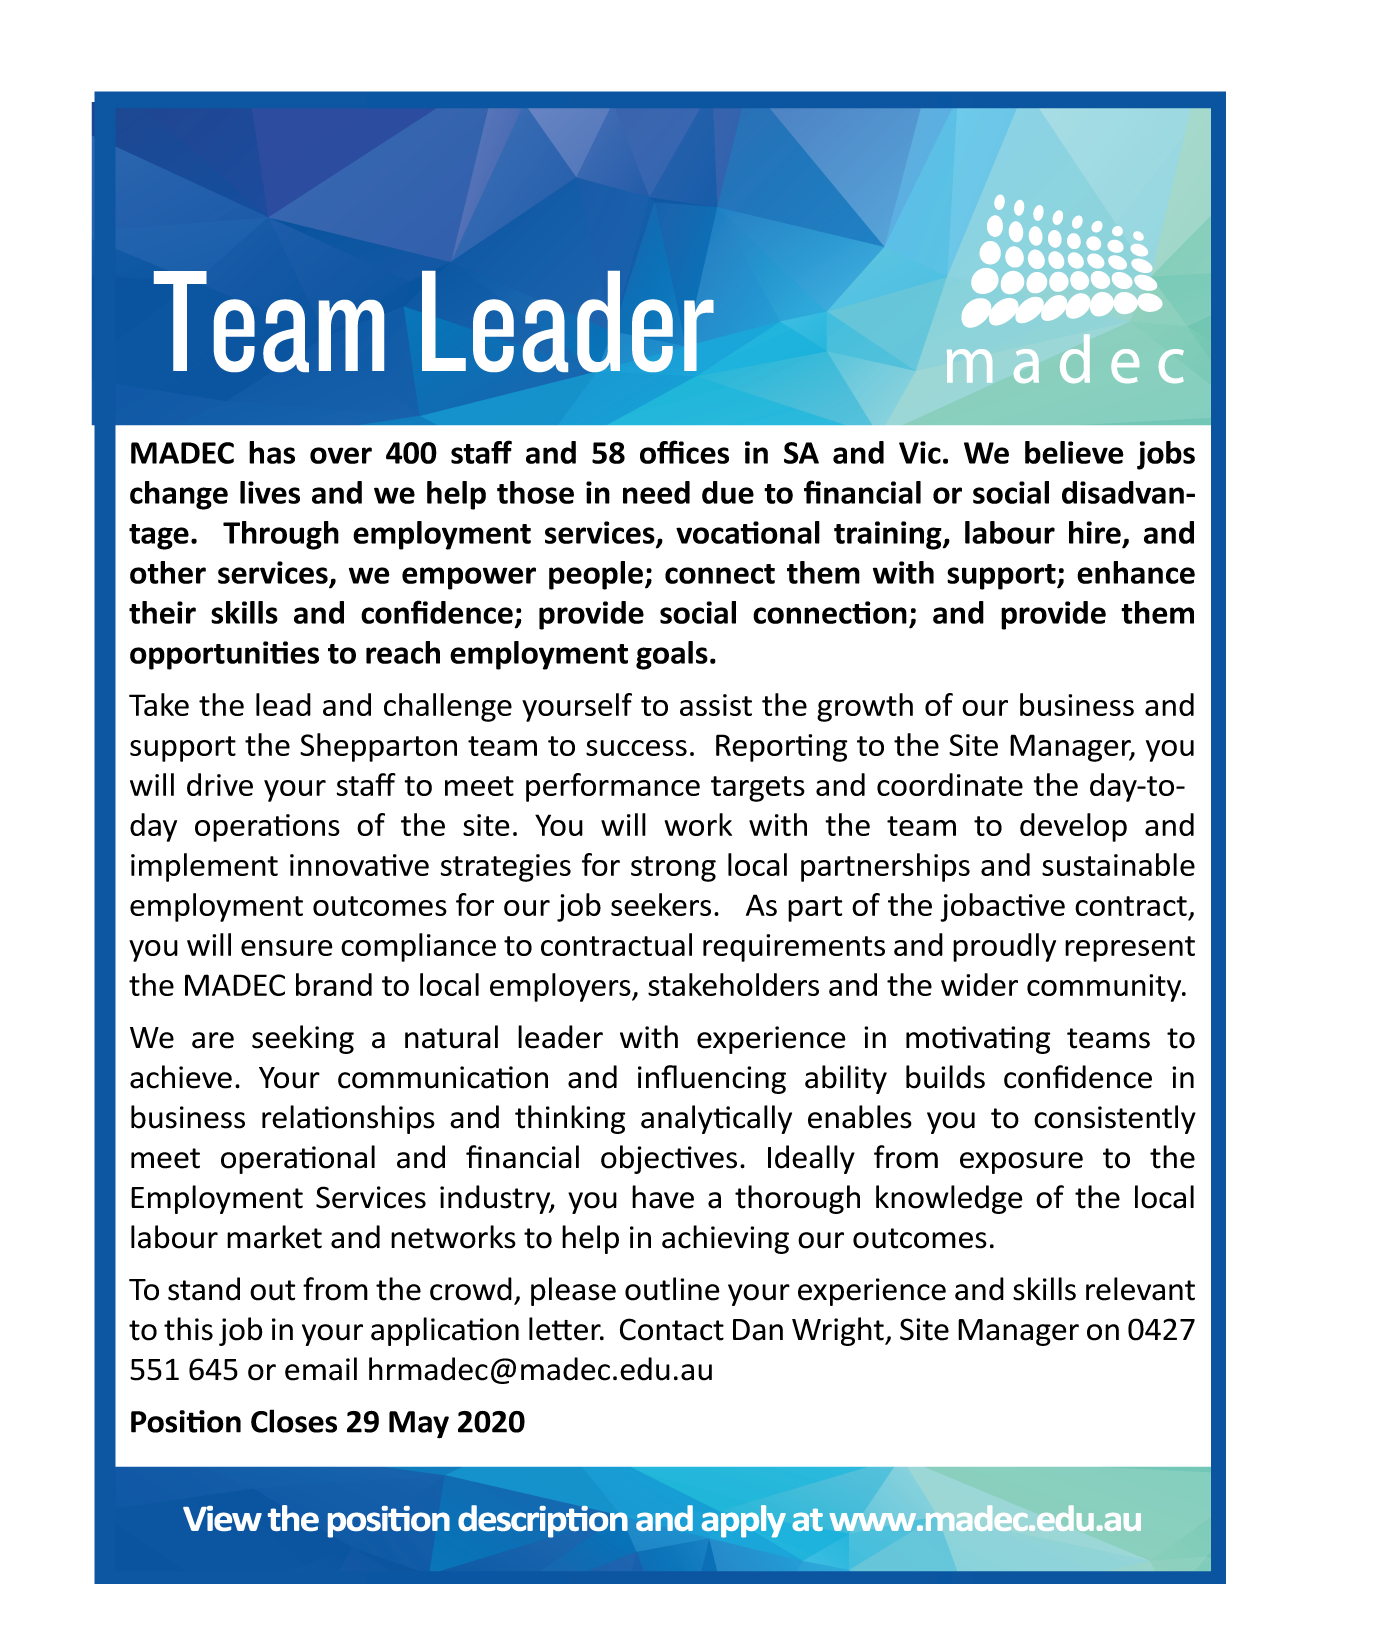 HR2078 - Team Leader - MADEC Australia